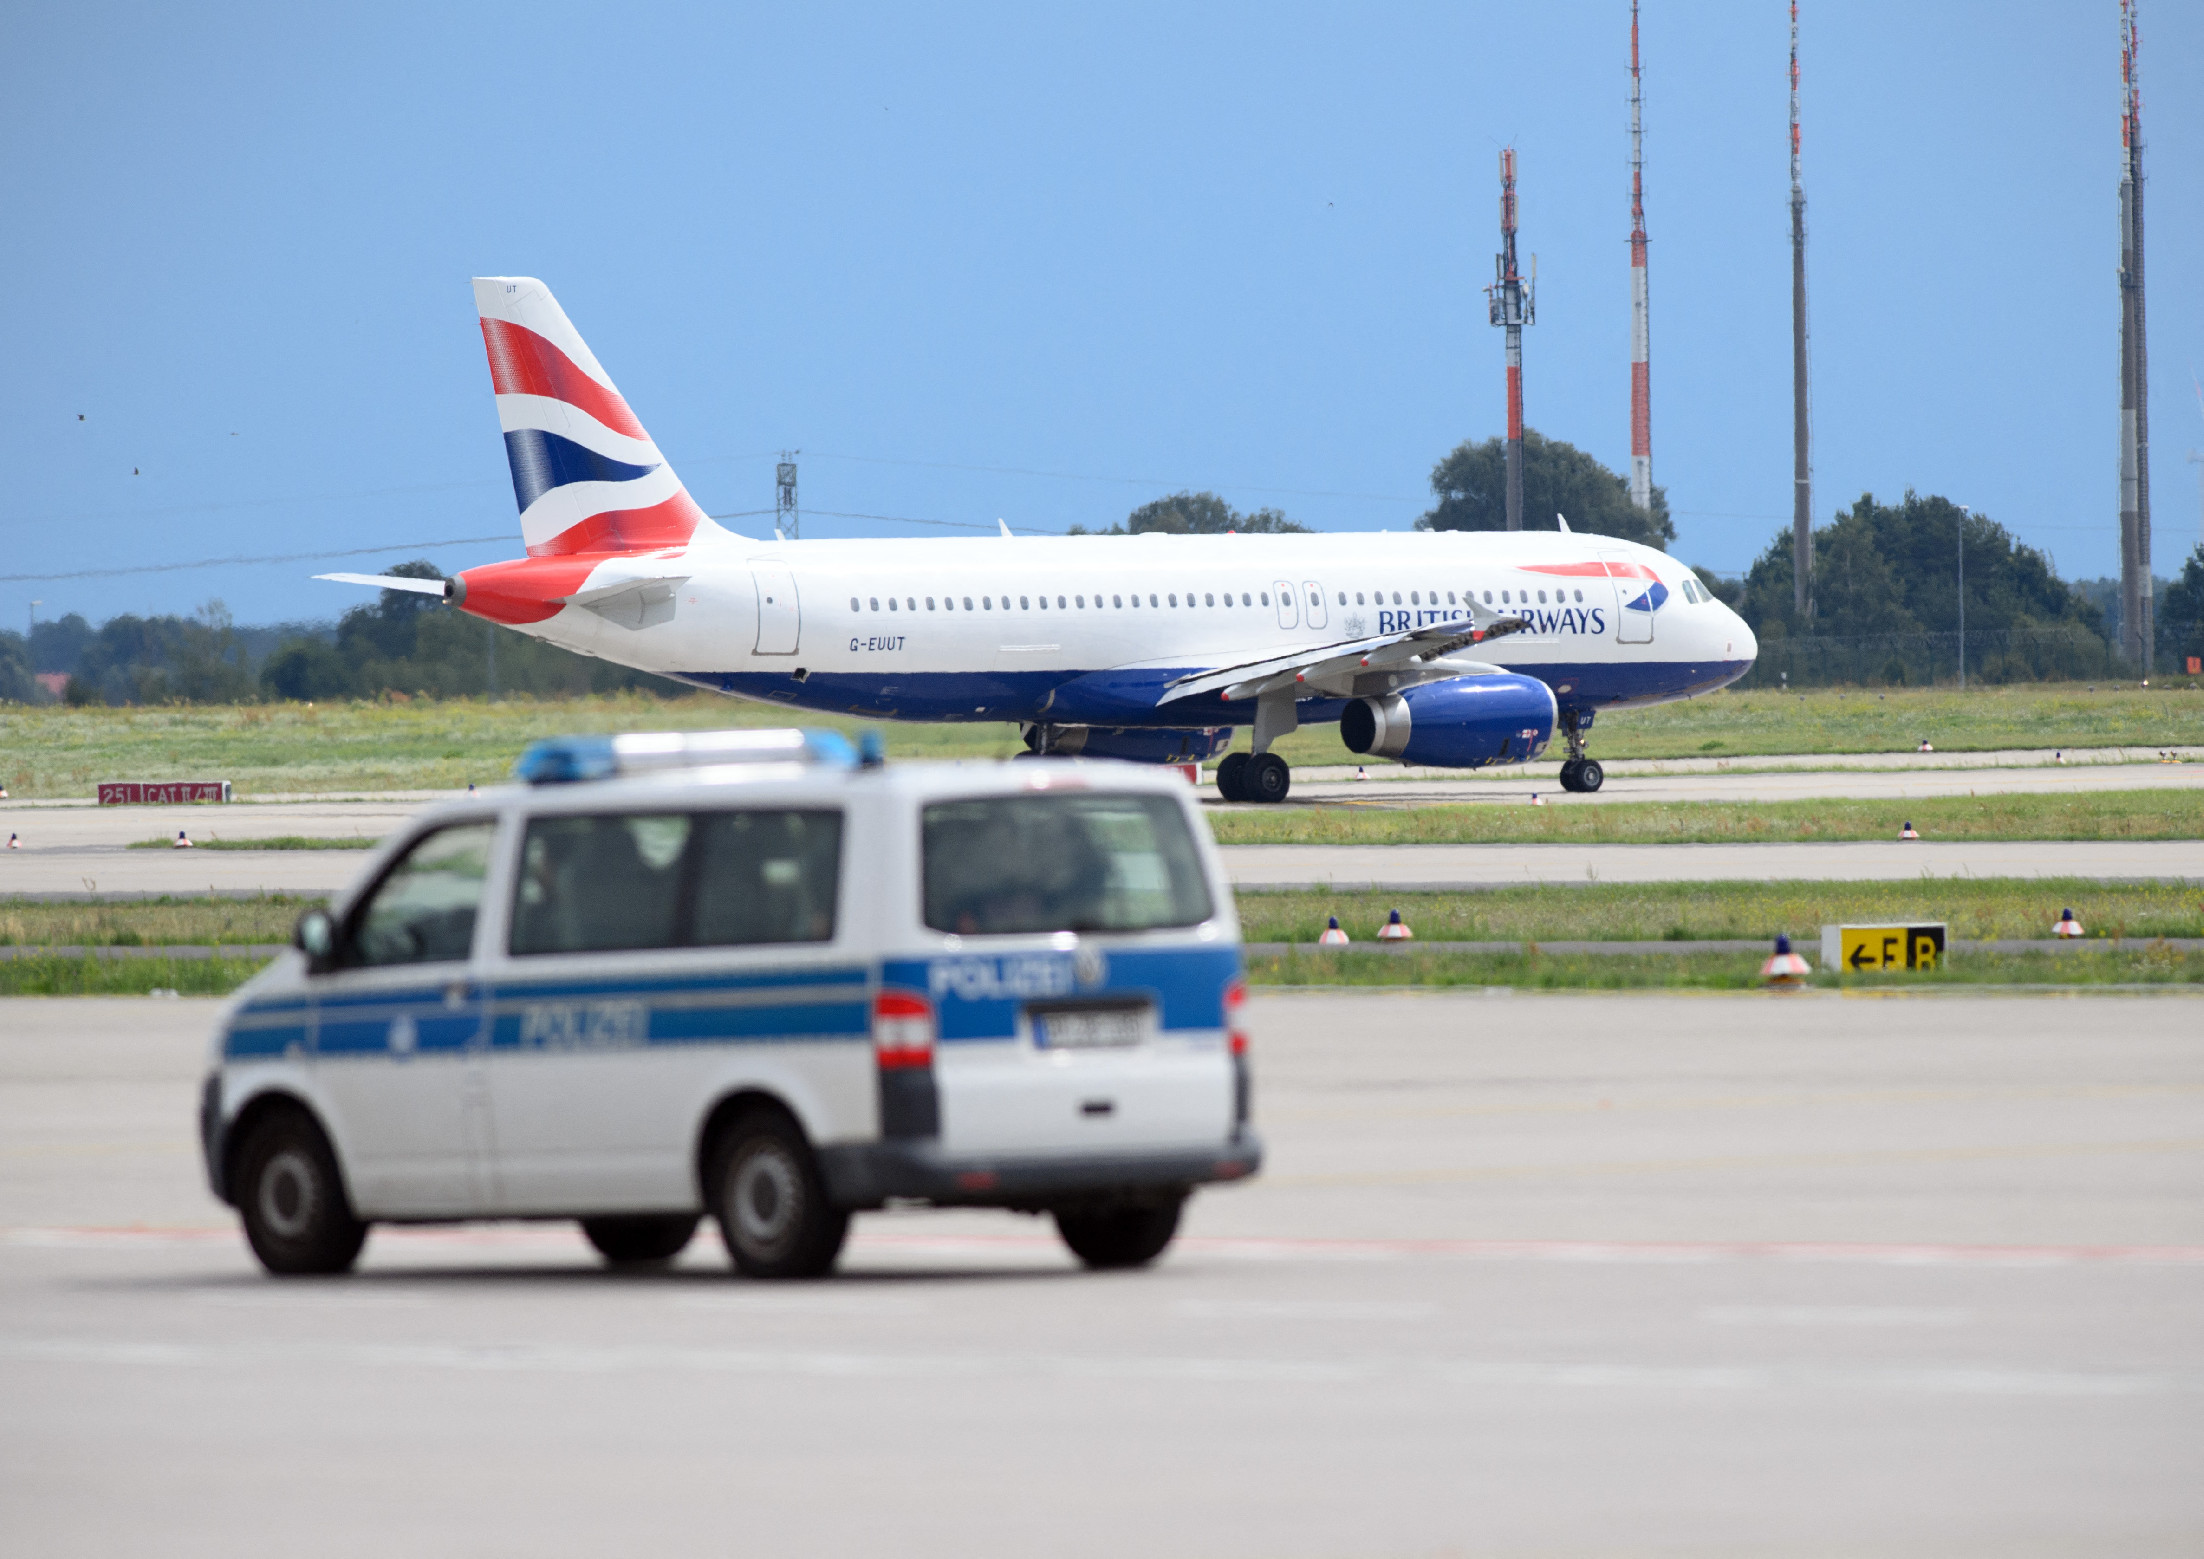 Fenntartható üzemanyag-jeggyel harcolnak a klímaváltozás ellen a British Airways utasai